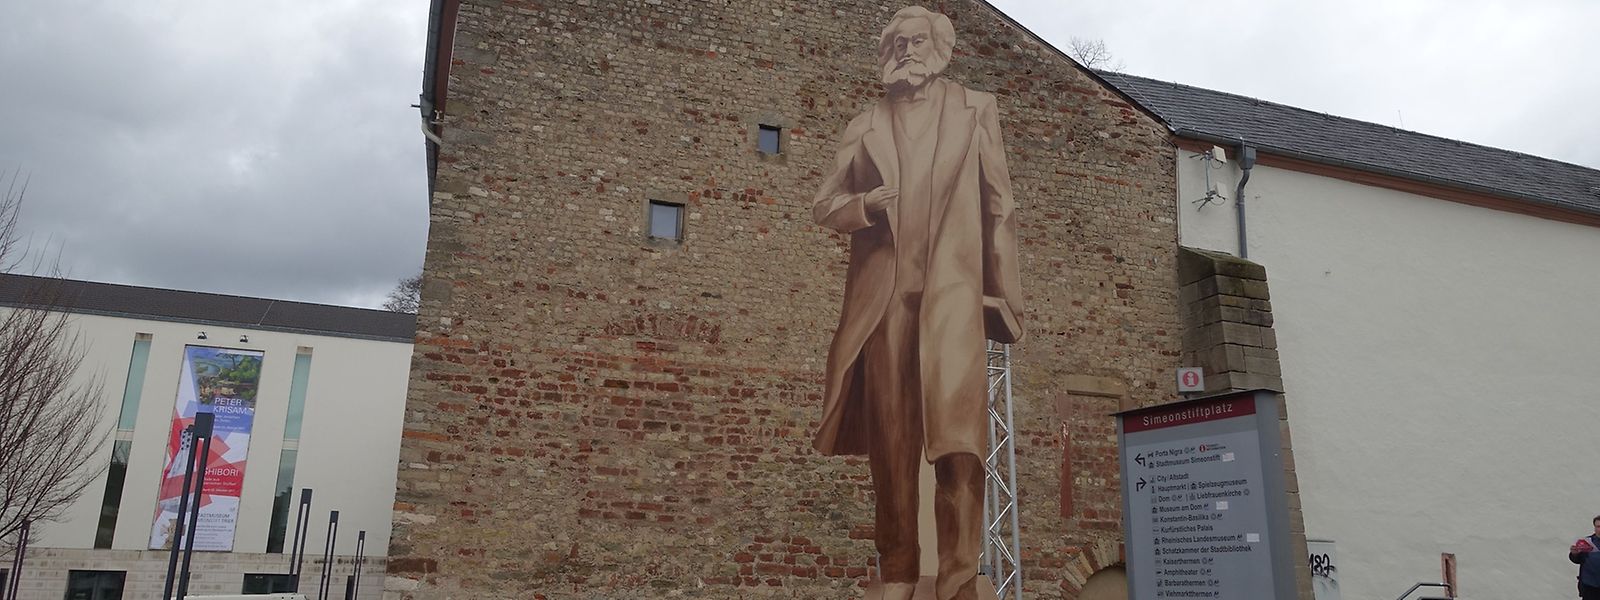 So ungefähr soll sie aussehen - allerdings aus Bronze und nicht wie dieses Modell aus Holz: China wird Trier eine 6,30 Meter hohe Karl-Marx-Statue schenken.